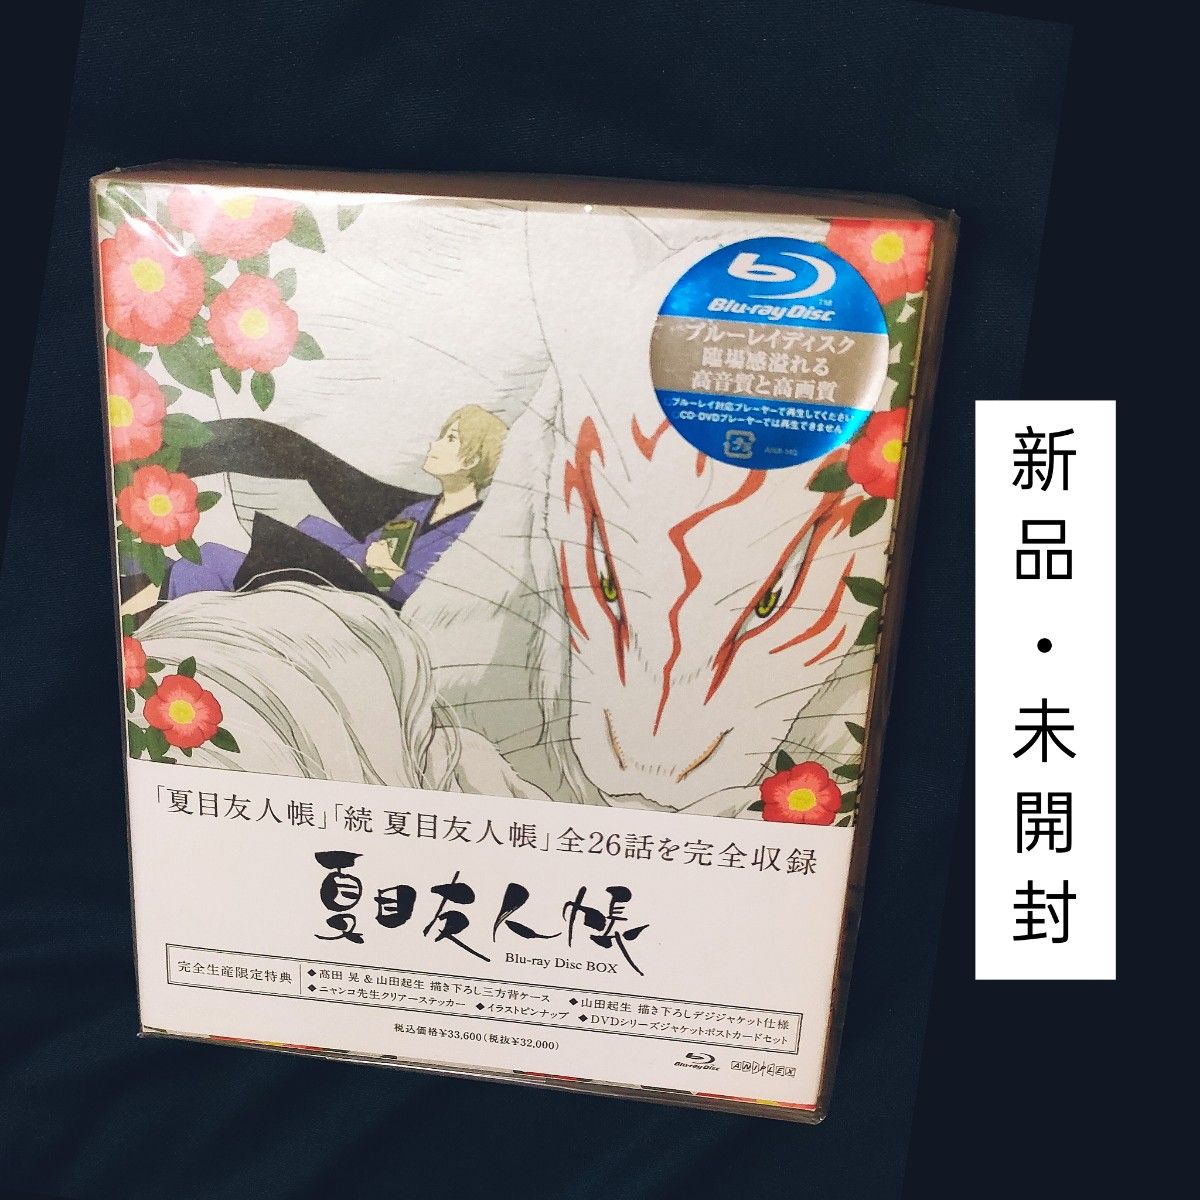 夏目友人帳 Blu-ray Disc BOX 第一期・第二期 (完全生産限定版